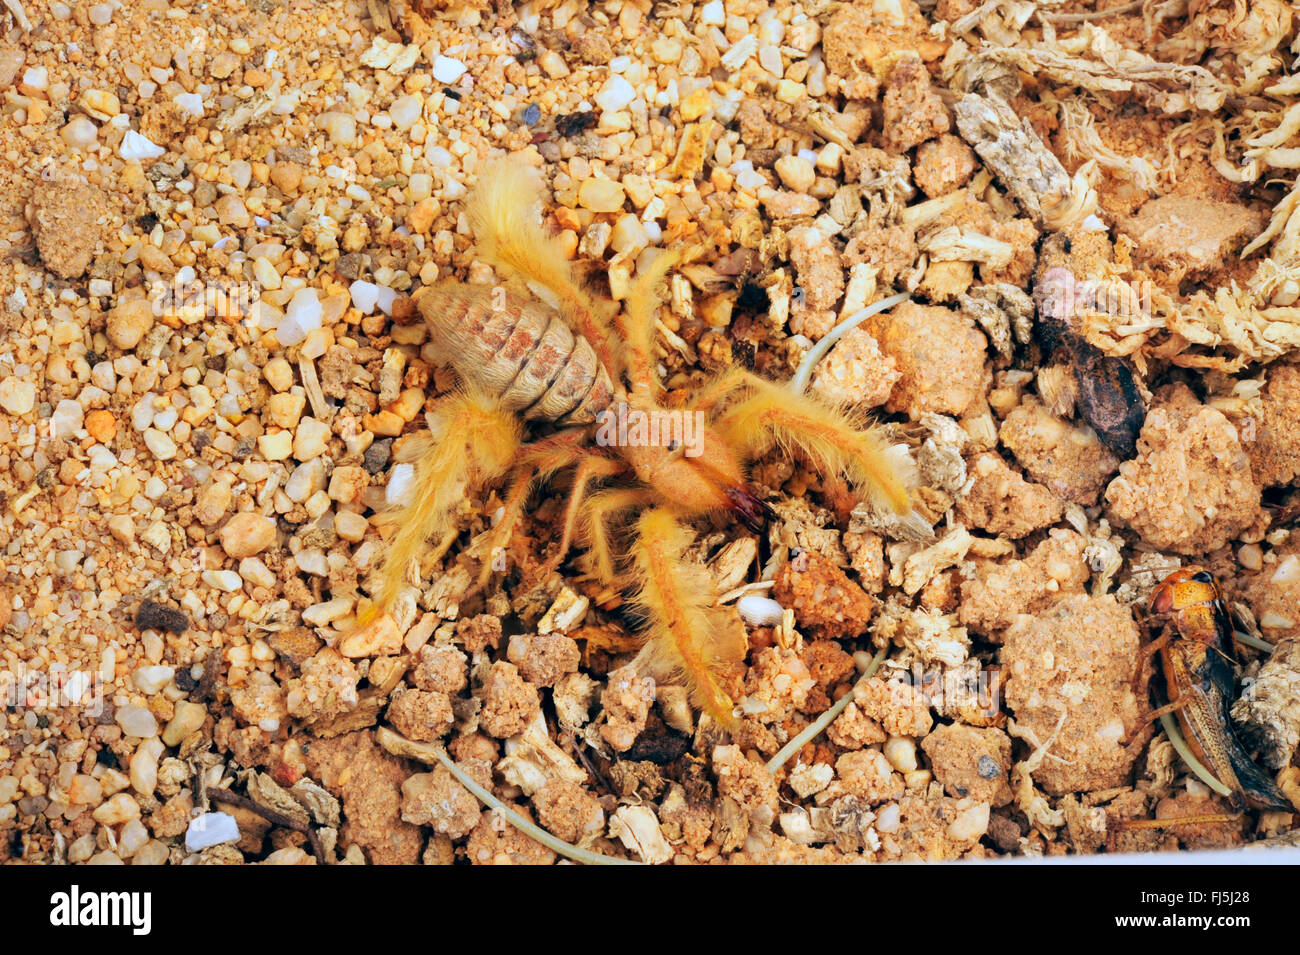 Camel spiders, Wind scorpions, Sun spiders, Solifuges (Galeodes deserti), in terrarium Stock Photo